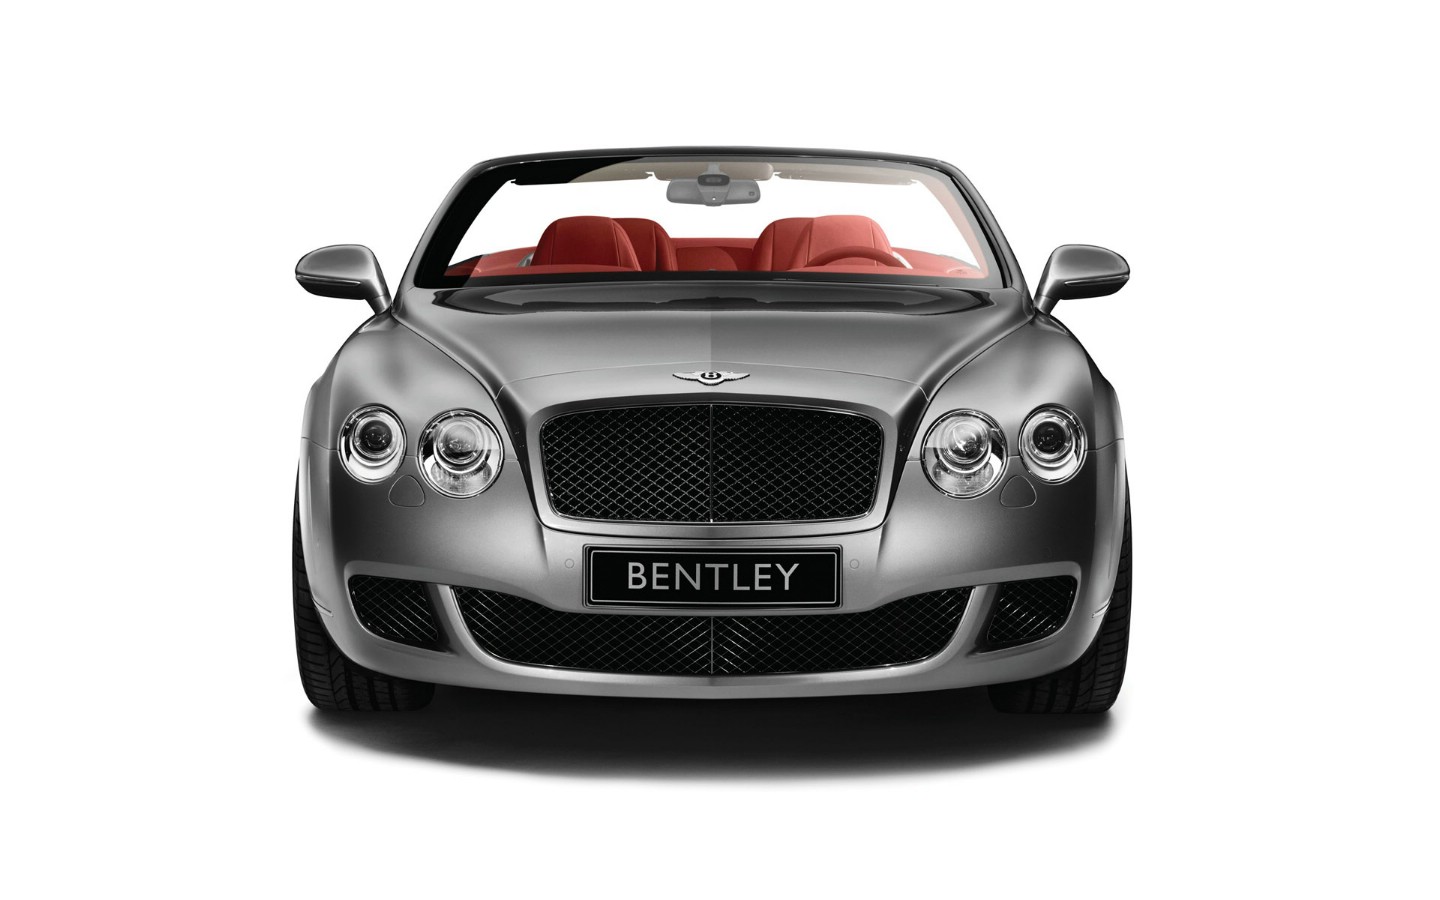 壁纸1440x900Bentley宾利 1 20壁纸 汽车品牌 Bentley宾利 第一辑壁纸 汽车品牌 Bentley宾利 第一辑图片 汽车品牌 Bentley宾利 第一辑素材 汽车壁纸 汽车图库 汽车图片素材桌面壁纸